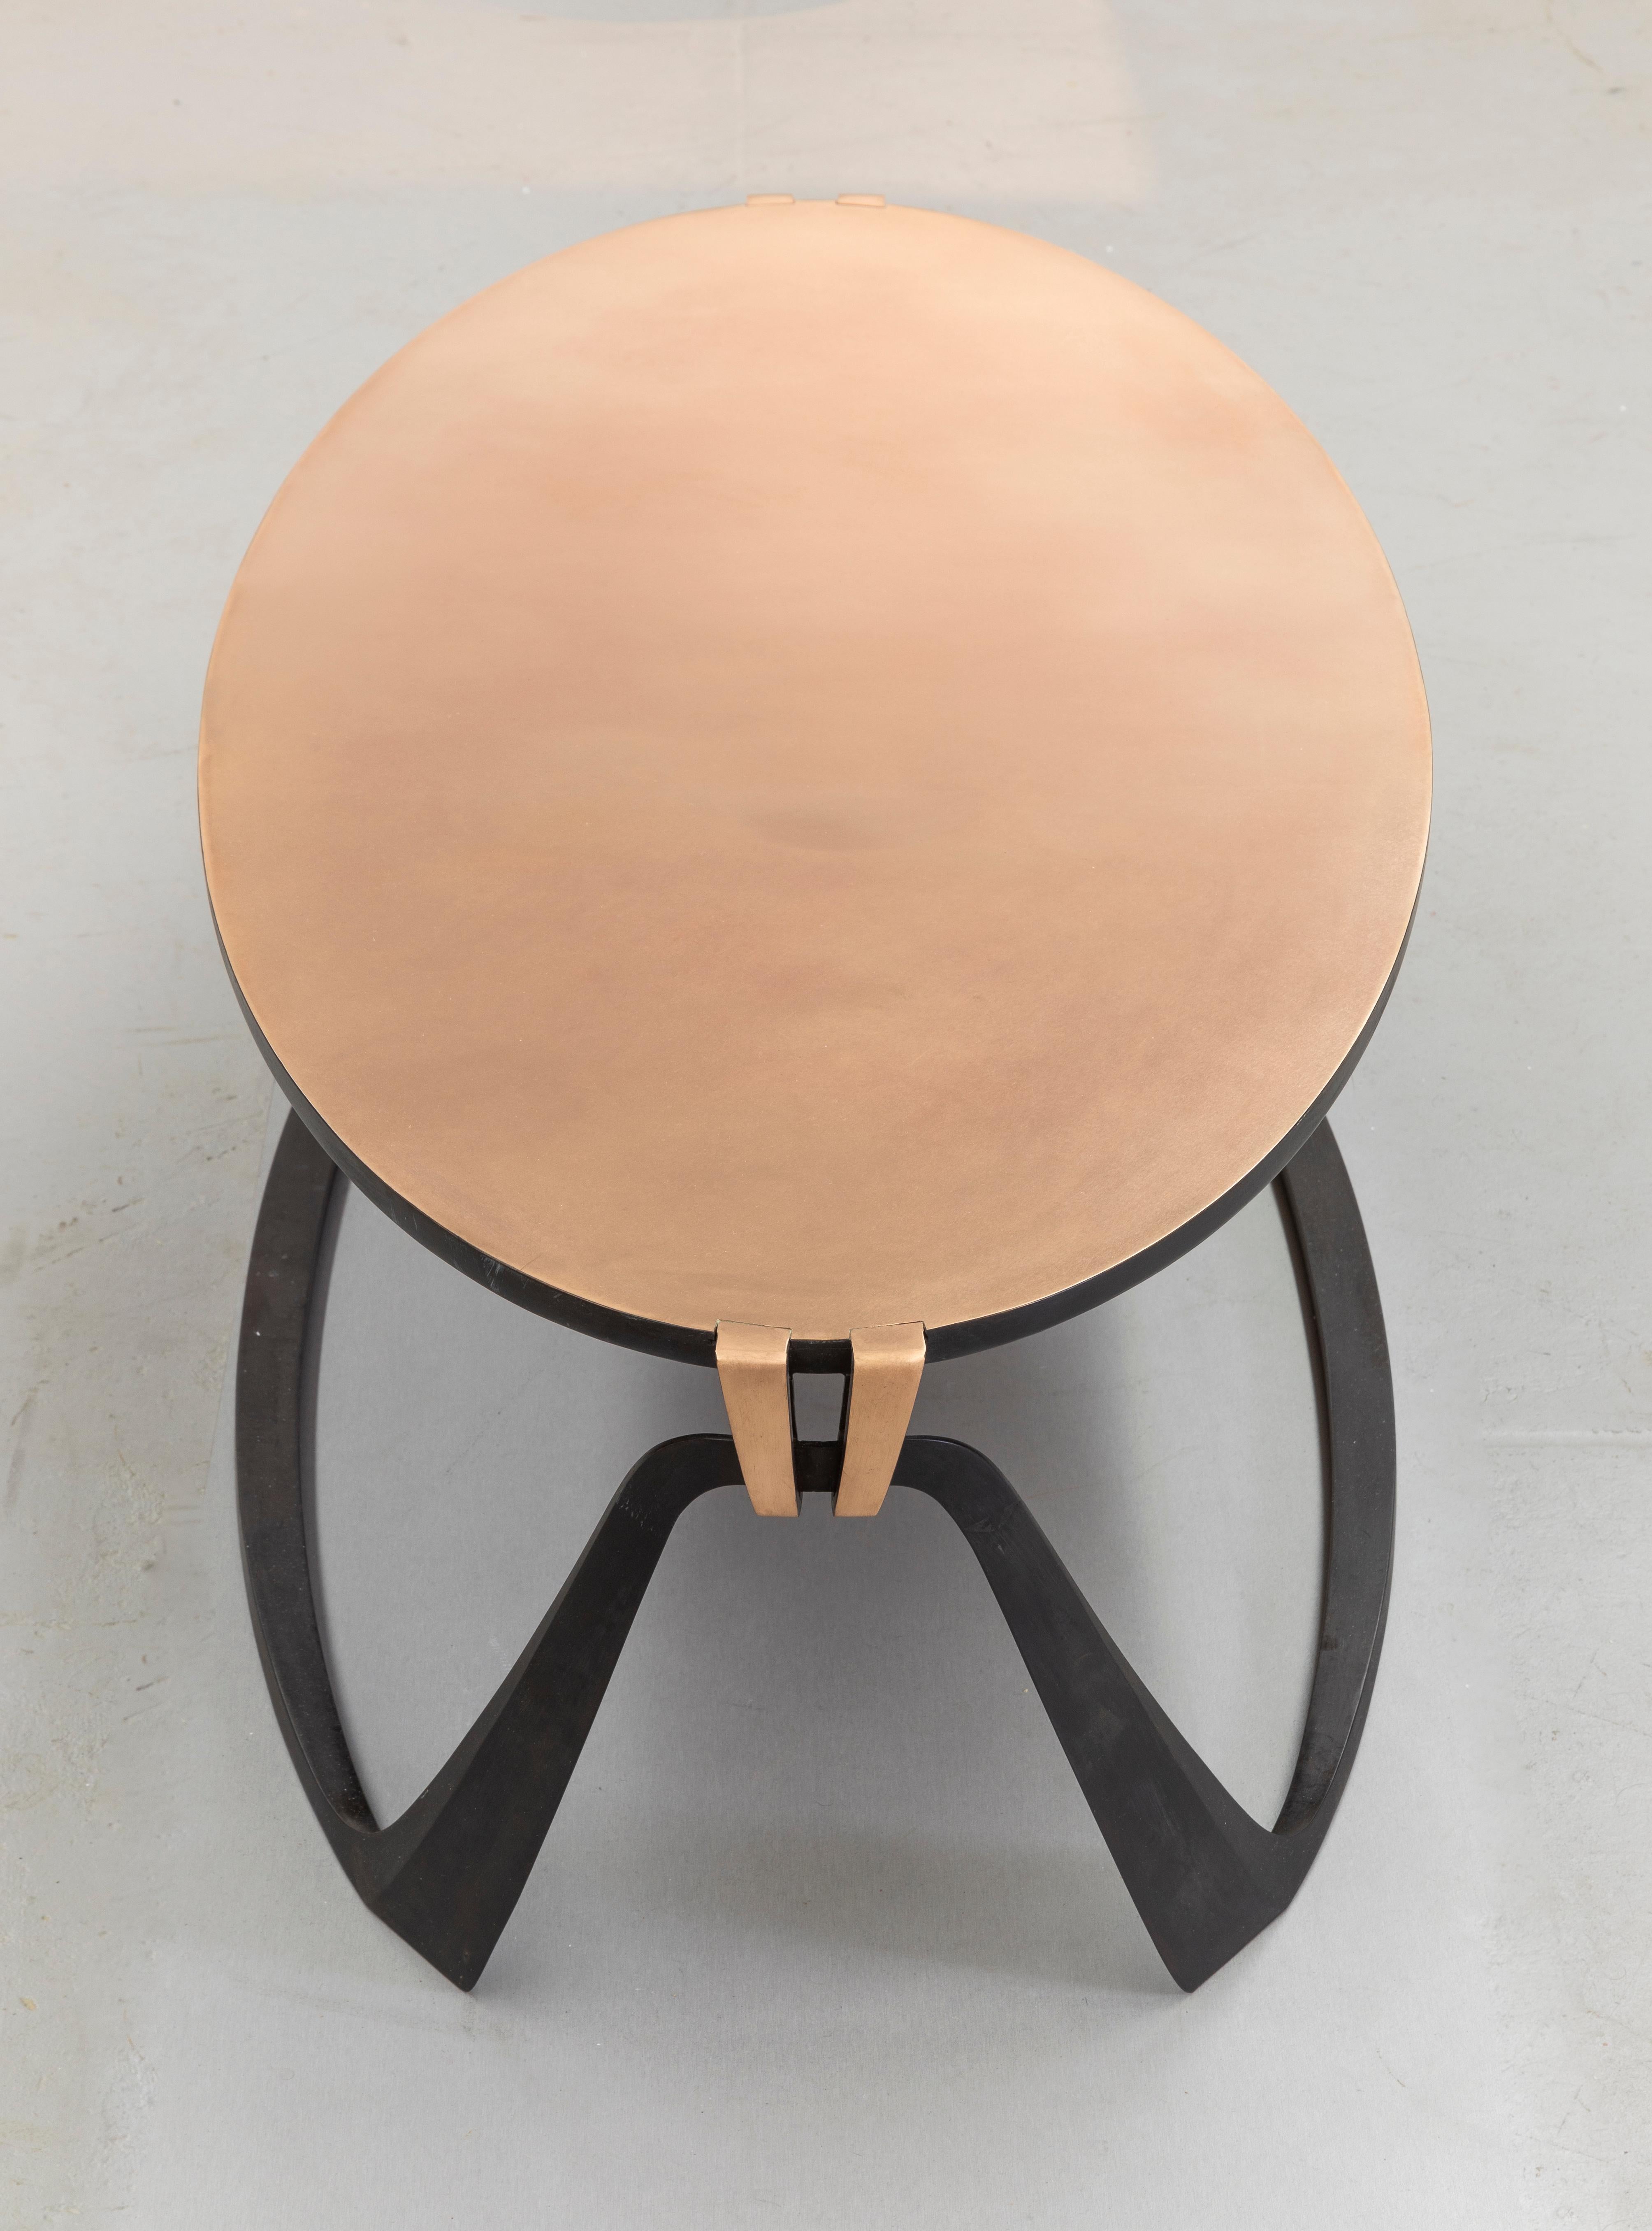 Elegante table basse en bronze bicolore.
Influencée par ses études de stylisme, Anasthasia Millot crée des formes subtilement dynamiques qui semblent défier la statique des matériaux solides.
Les courbes, les touches ascendantes et descendantes de